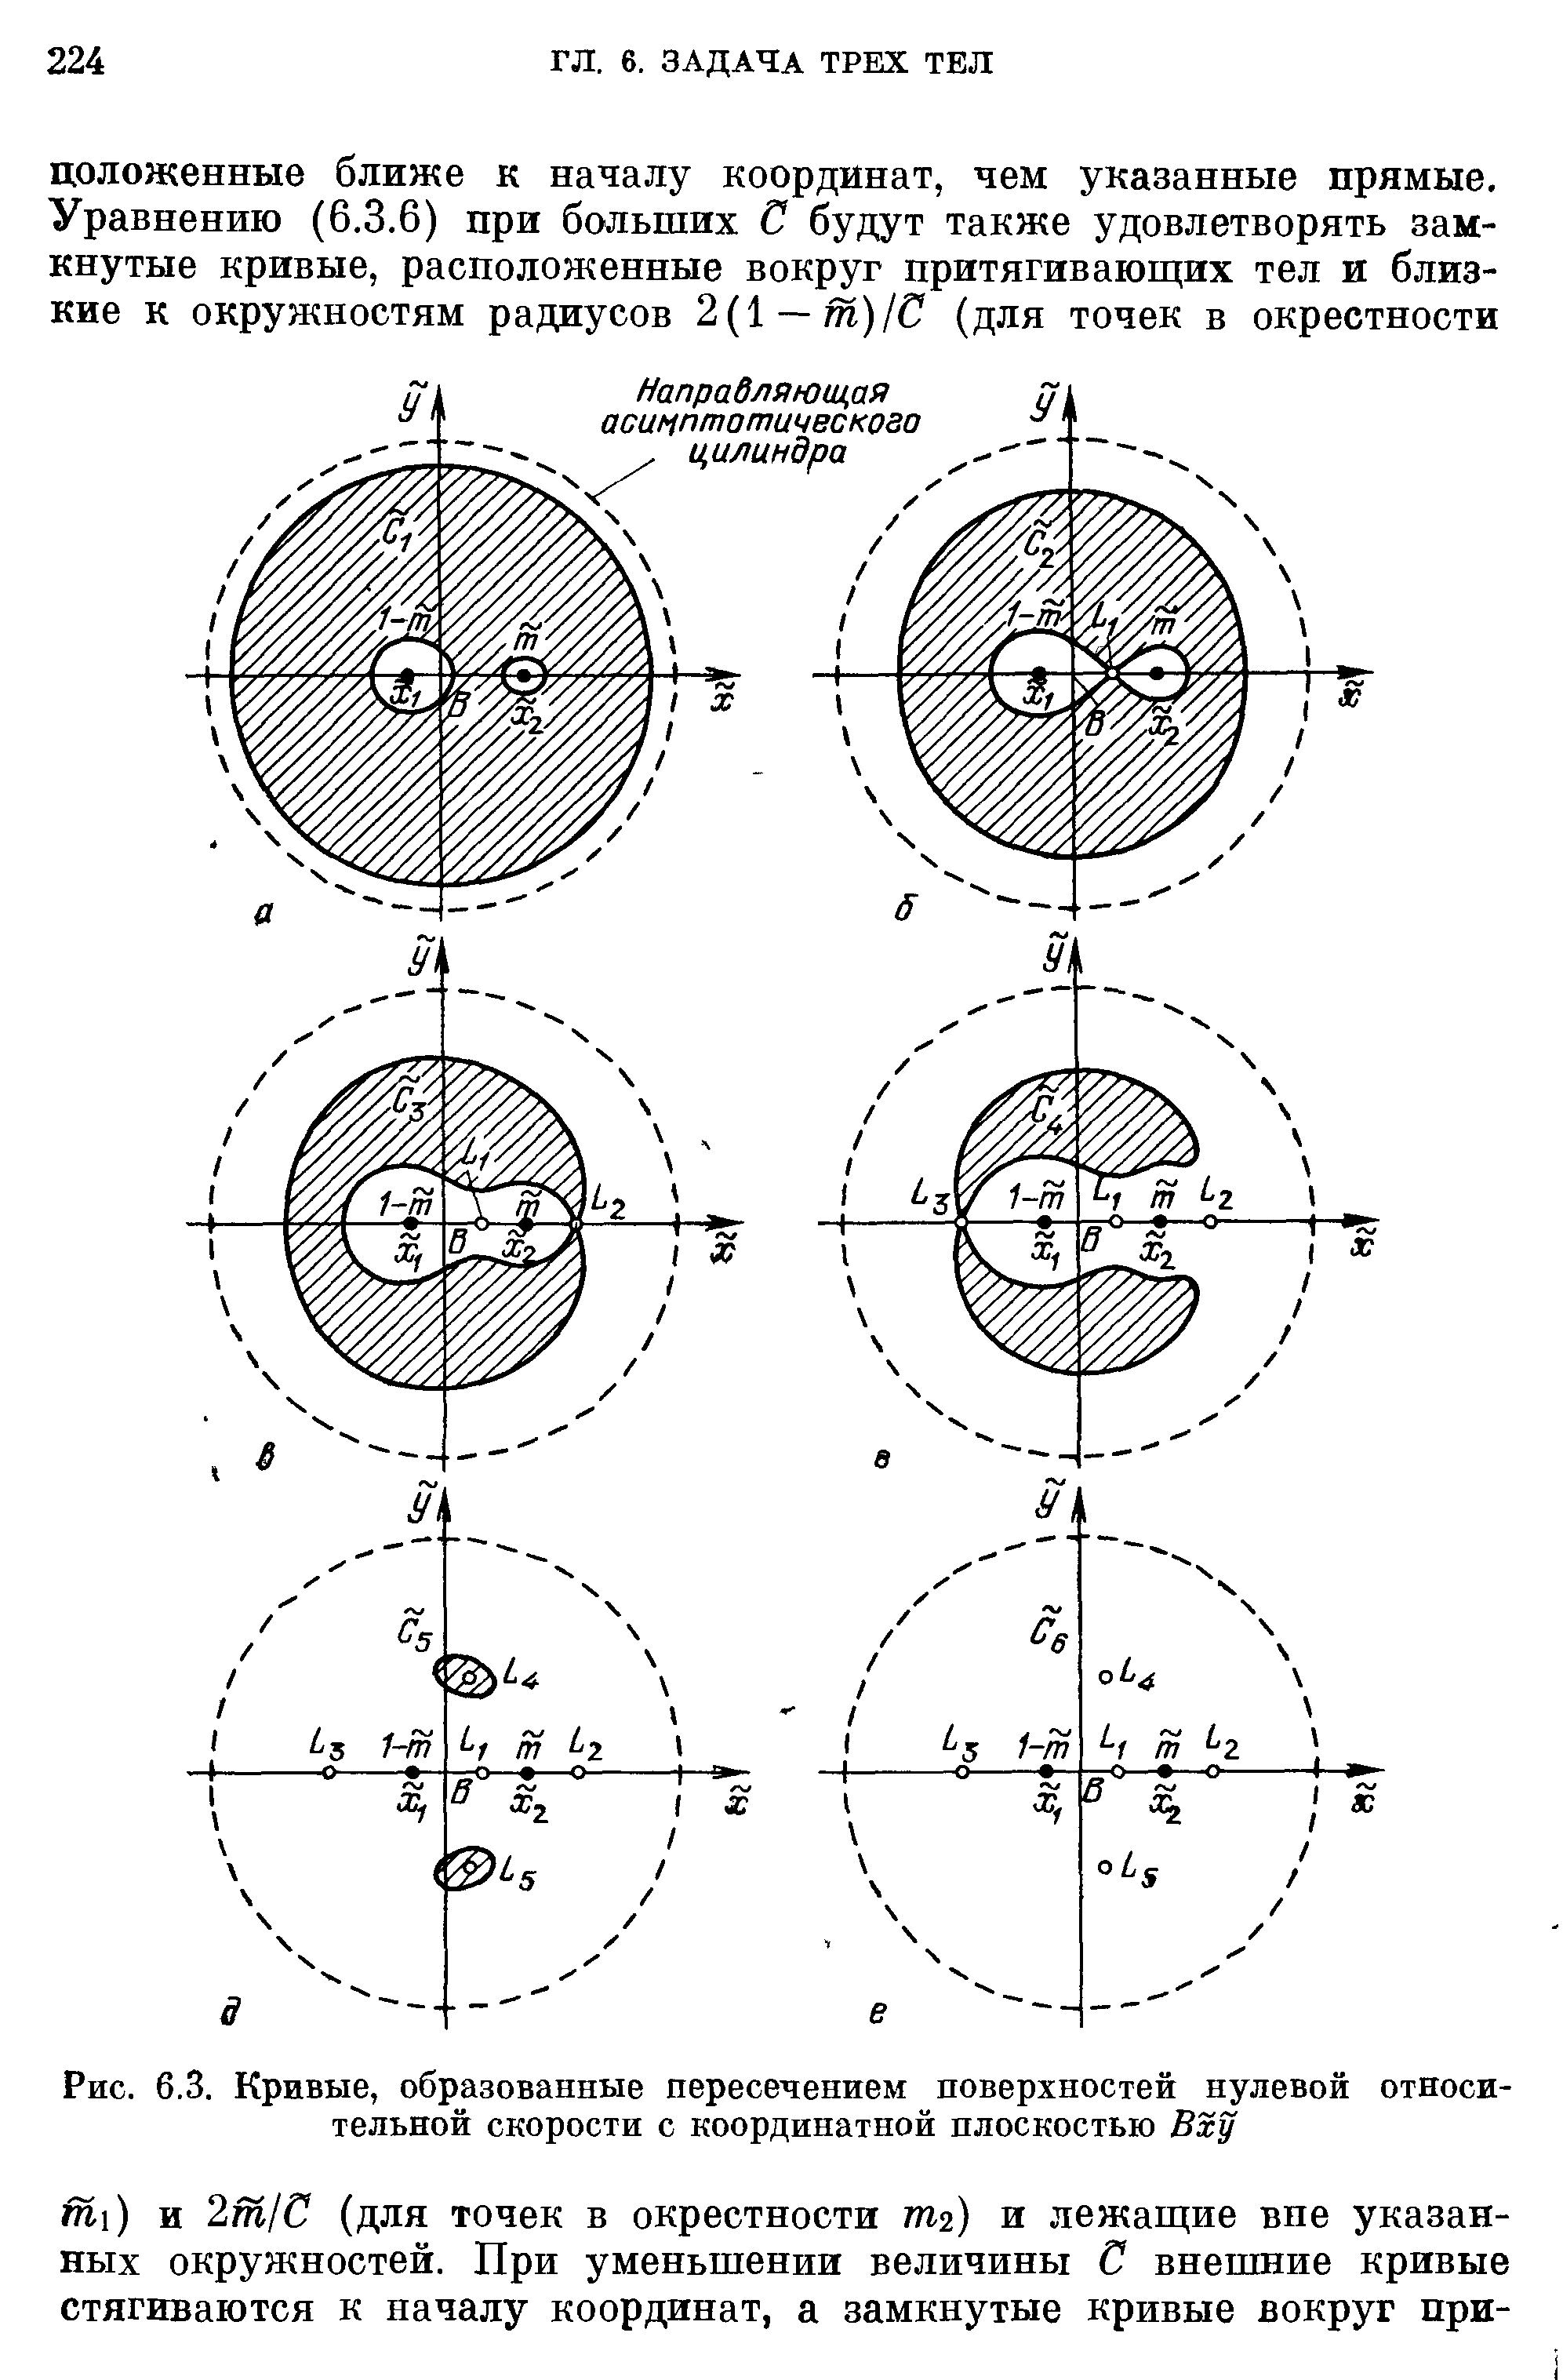 Рис. 6.3. Кривые, образованные пересечением поверхностей нулевой относительной скорости с координатной плоскостью Вху
